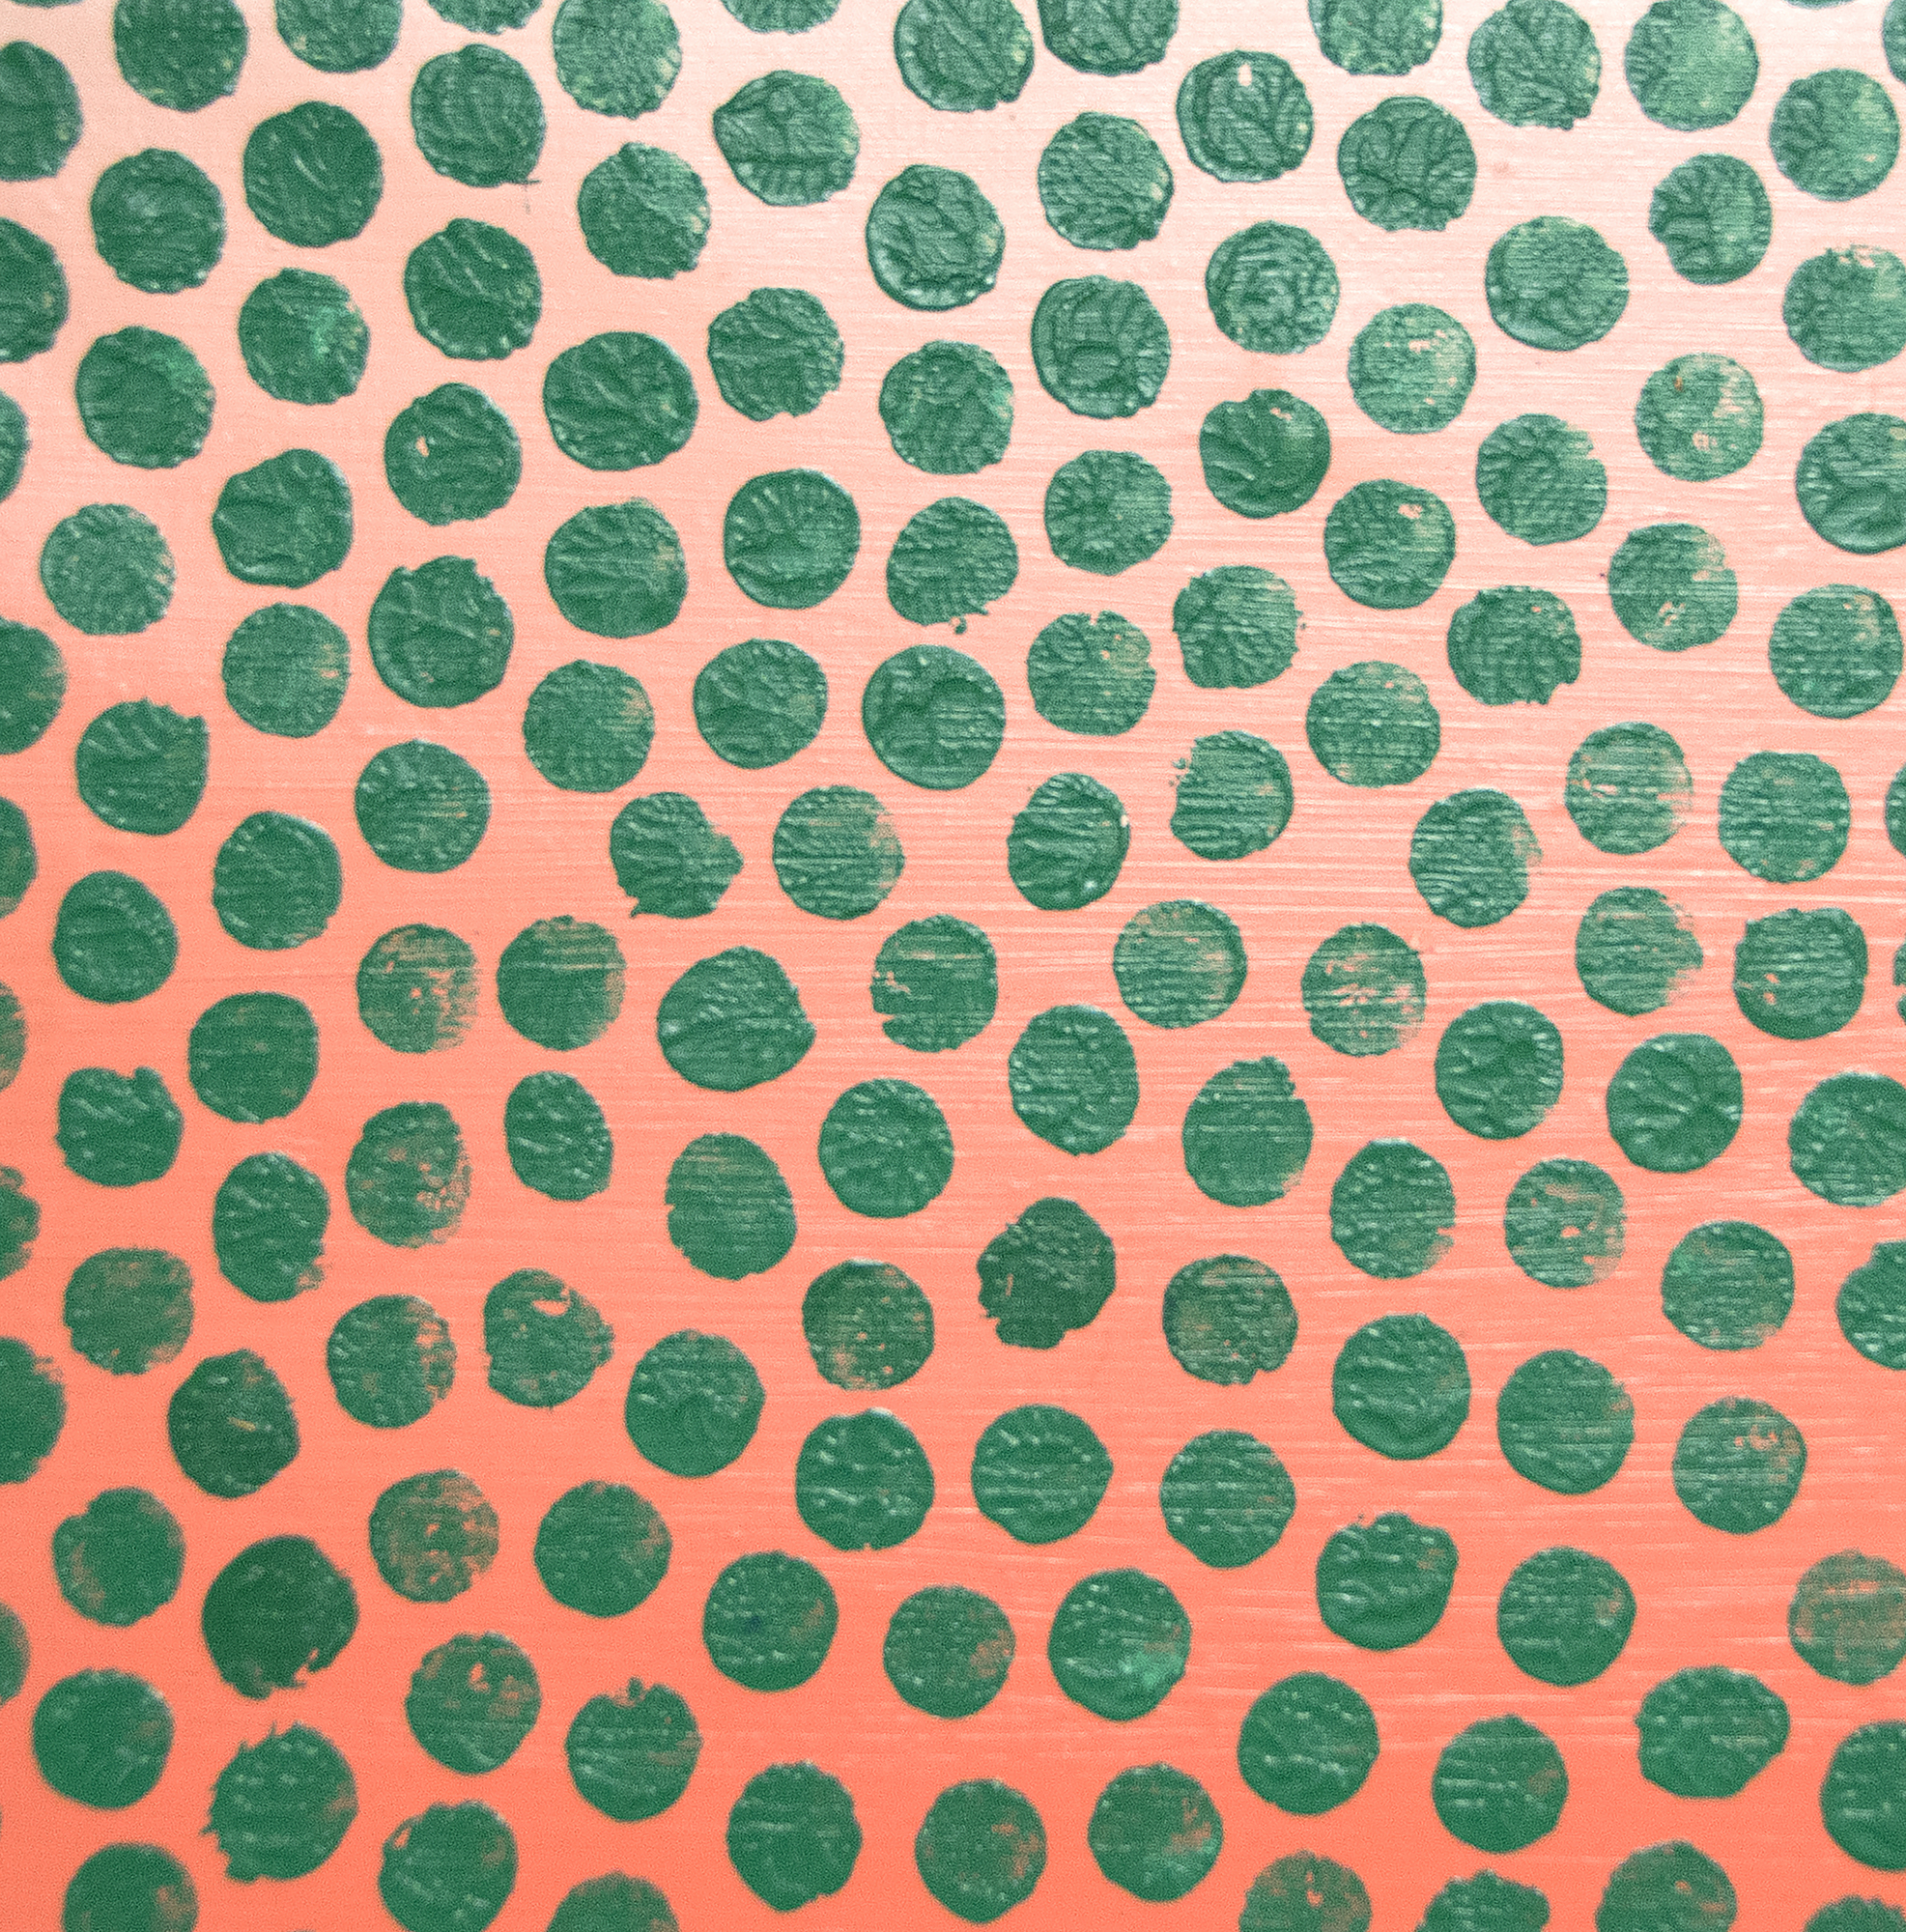 فوسيتيك فانغور-النقاط الخضراء-النفط علي قماش-52 7/8 × 33 1/2 في.